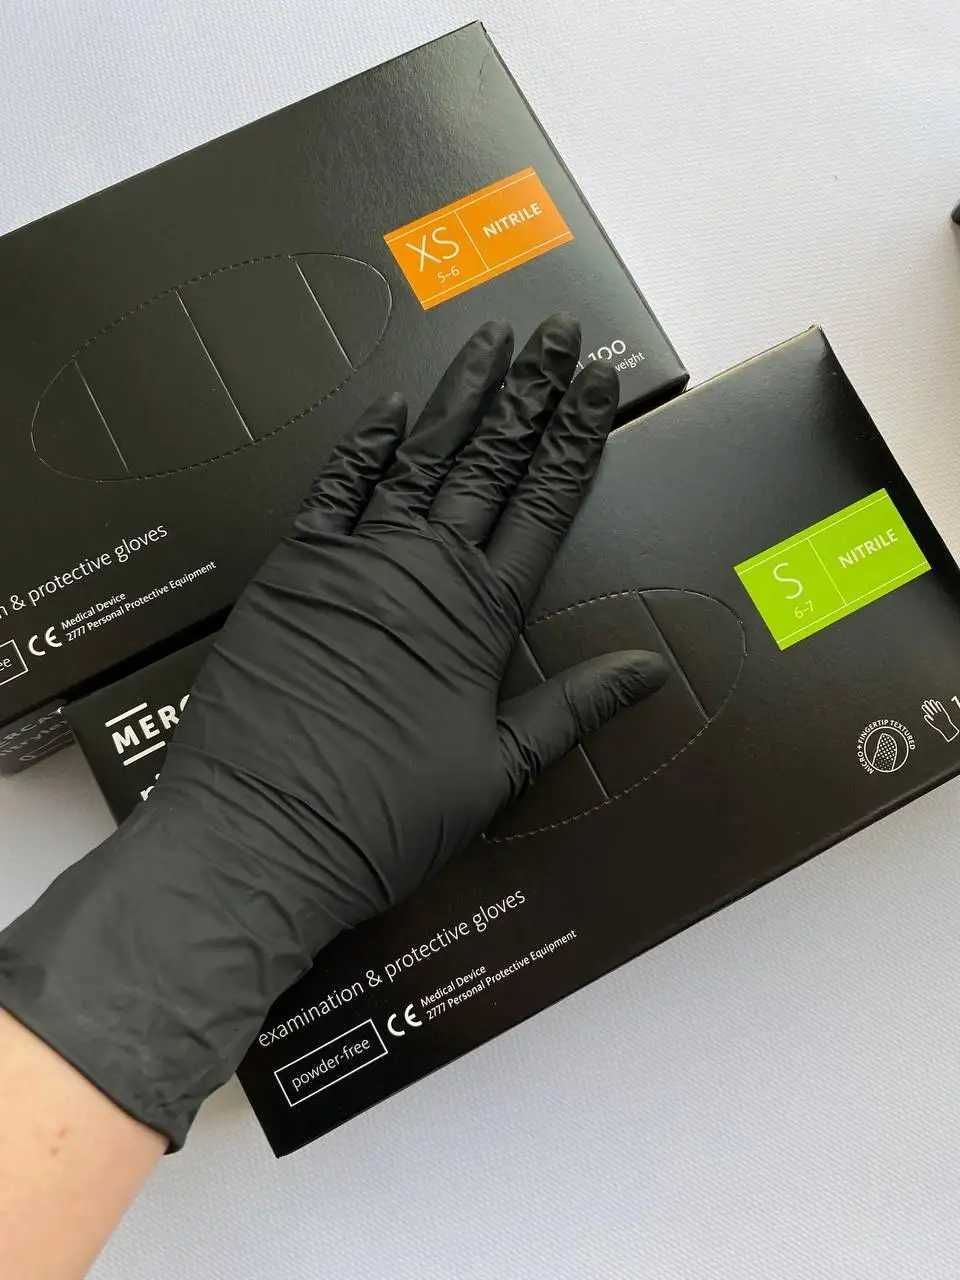 Крепкие и удобные: нитриловые перчатки Nitrylex для бьюти мастеров